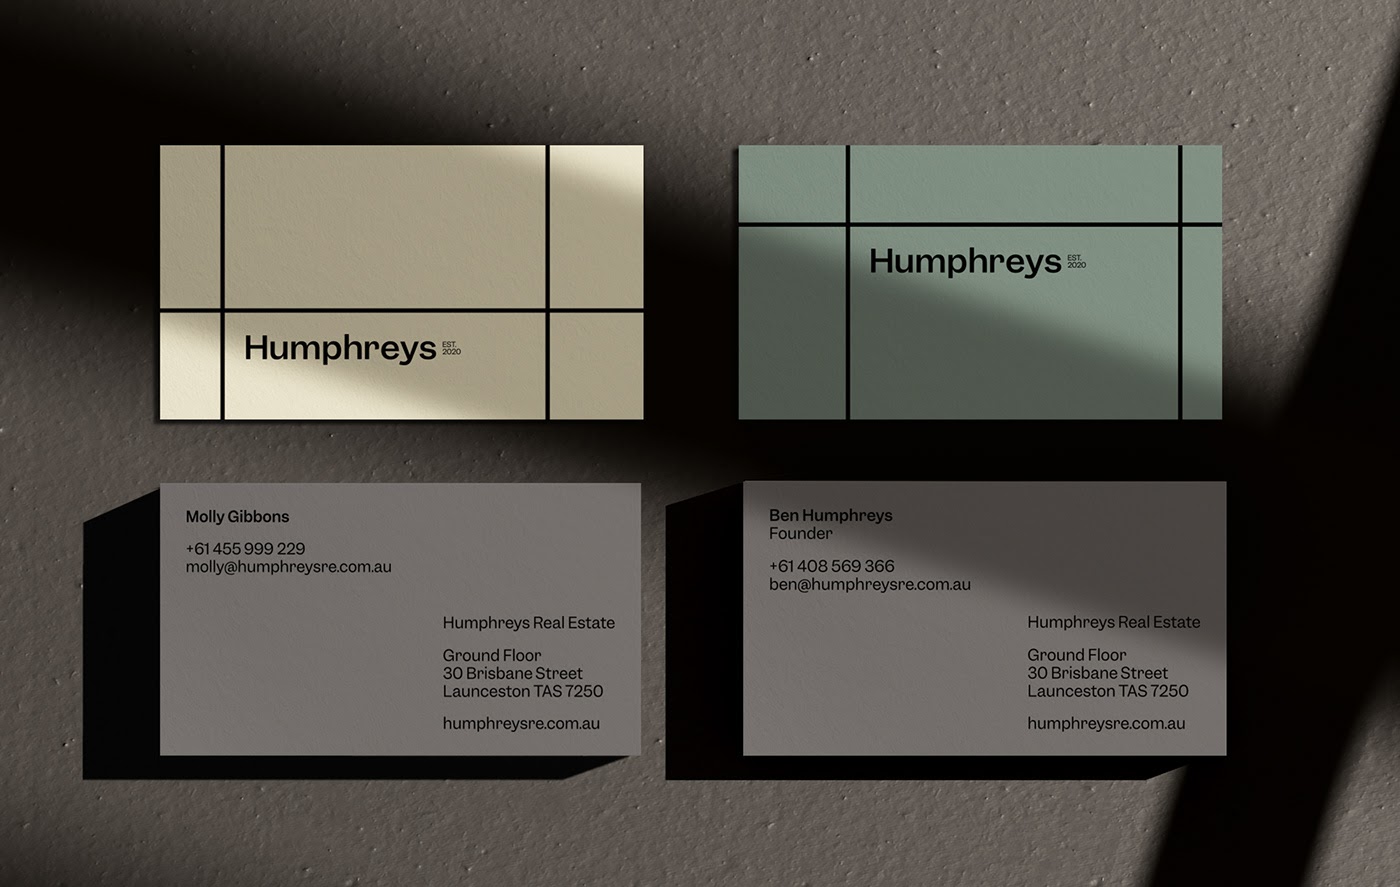 房地产公司Humphreys品牌视觉设计